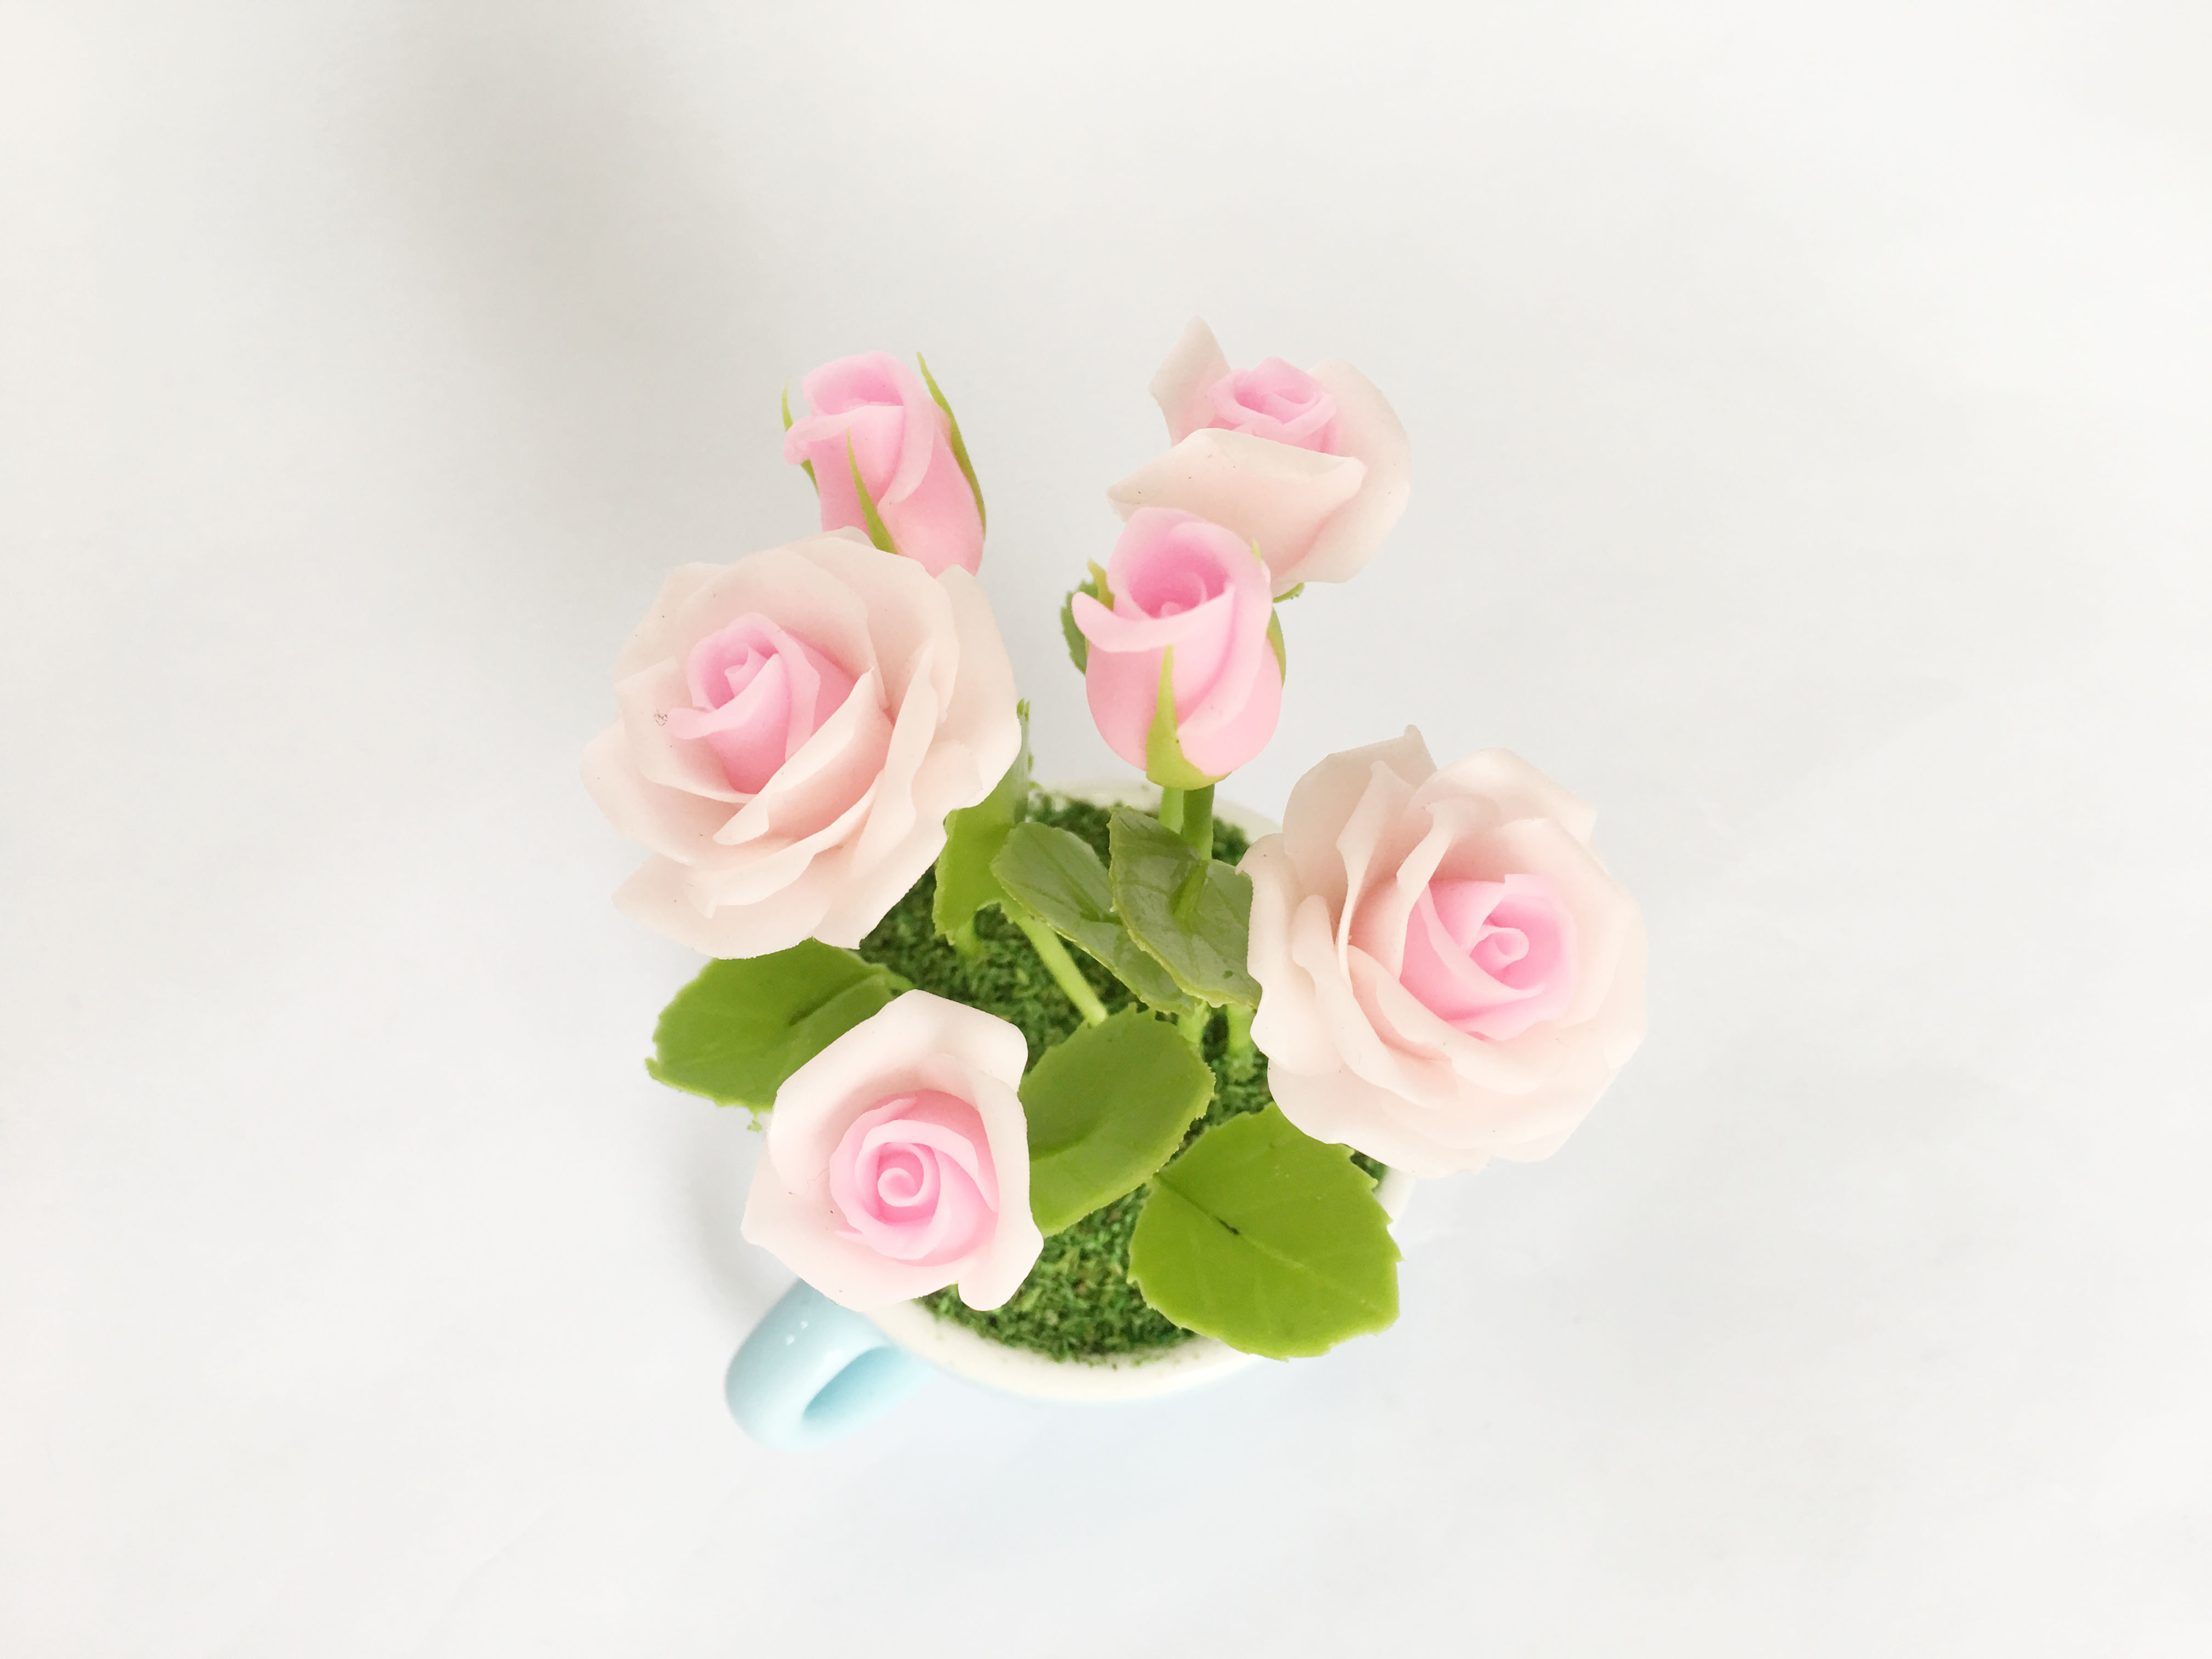 Chậu hoa đất sét mini - Bụi hoa hồng trong cốc sứ (phát màu ngẫu nhiên) - Quà tặng trang trí handmade